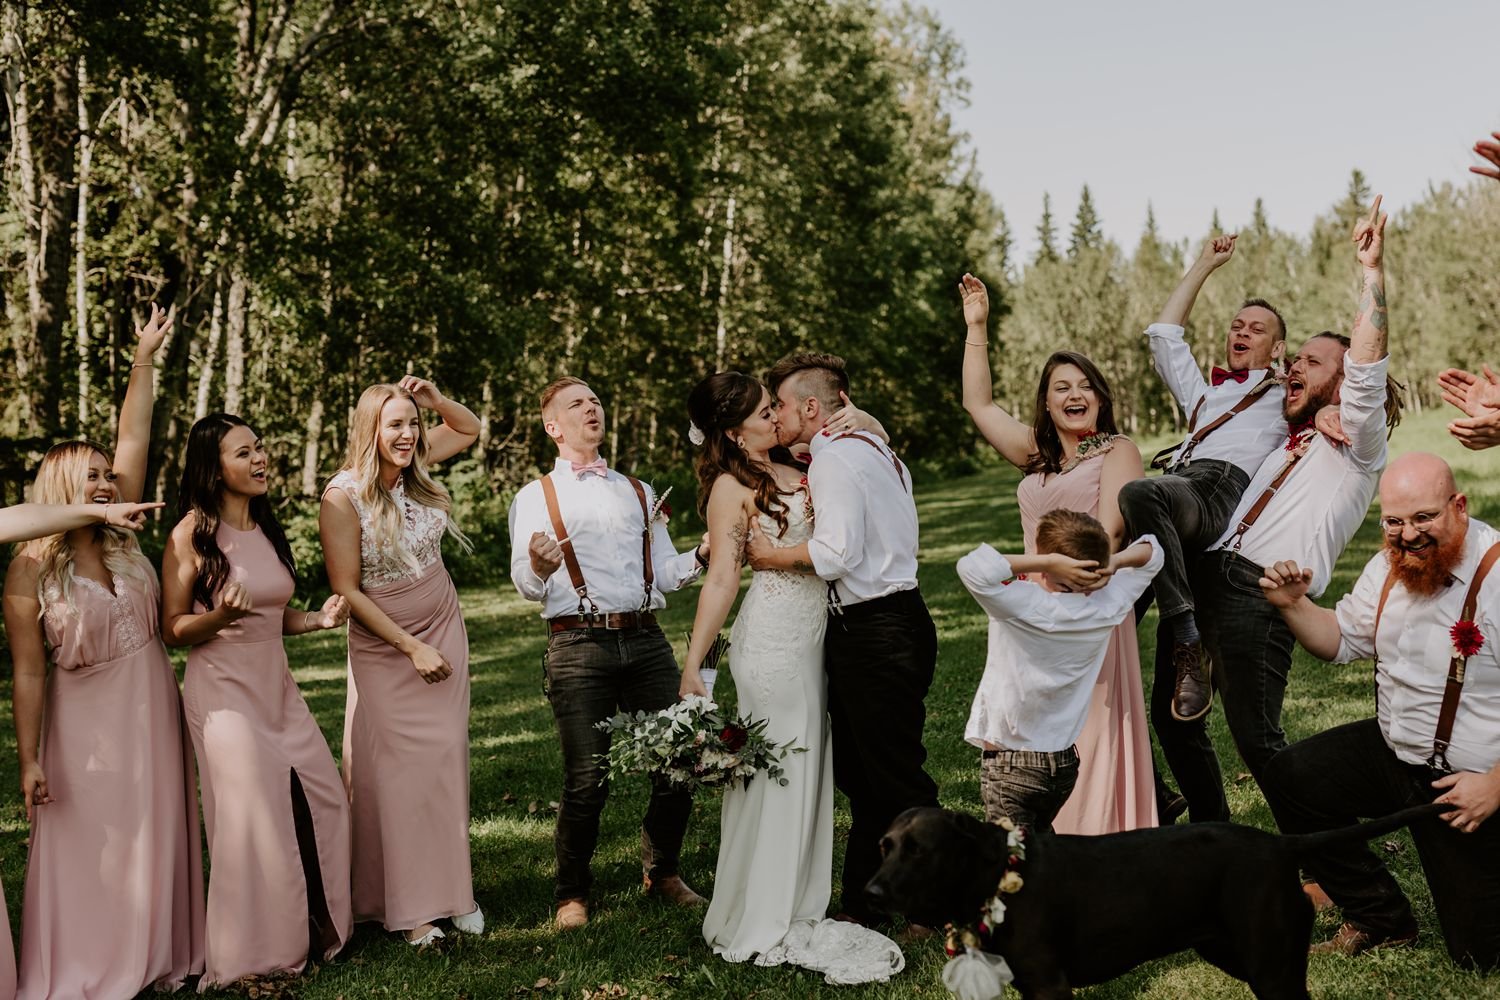 Outdoor Alberta Summer Wedding | Carling + Andre